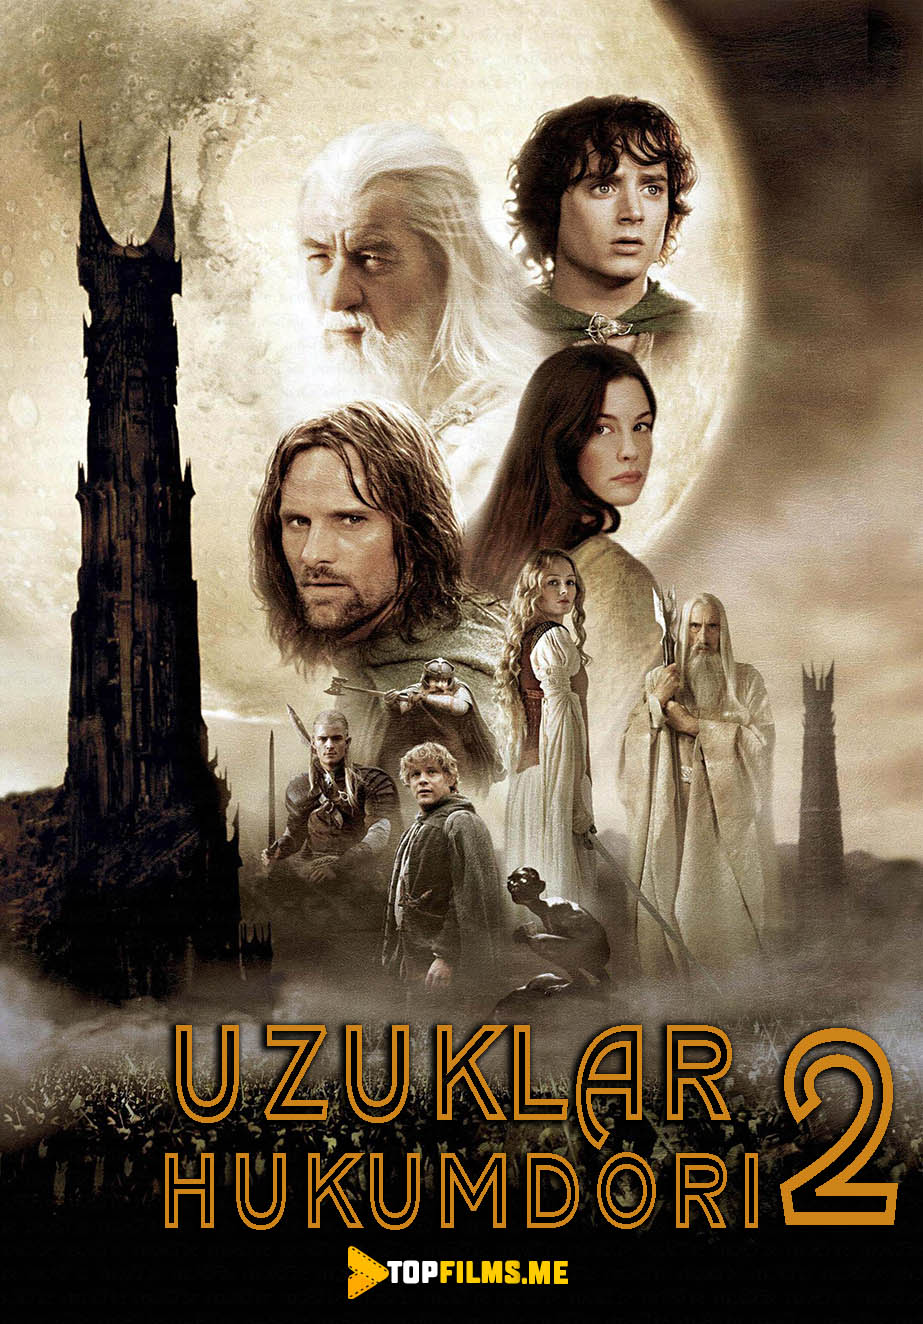 Uzuklar Hukumdori 2 Uzbek tilida 2002 skachat film